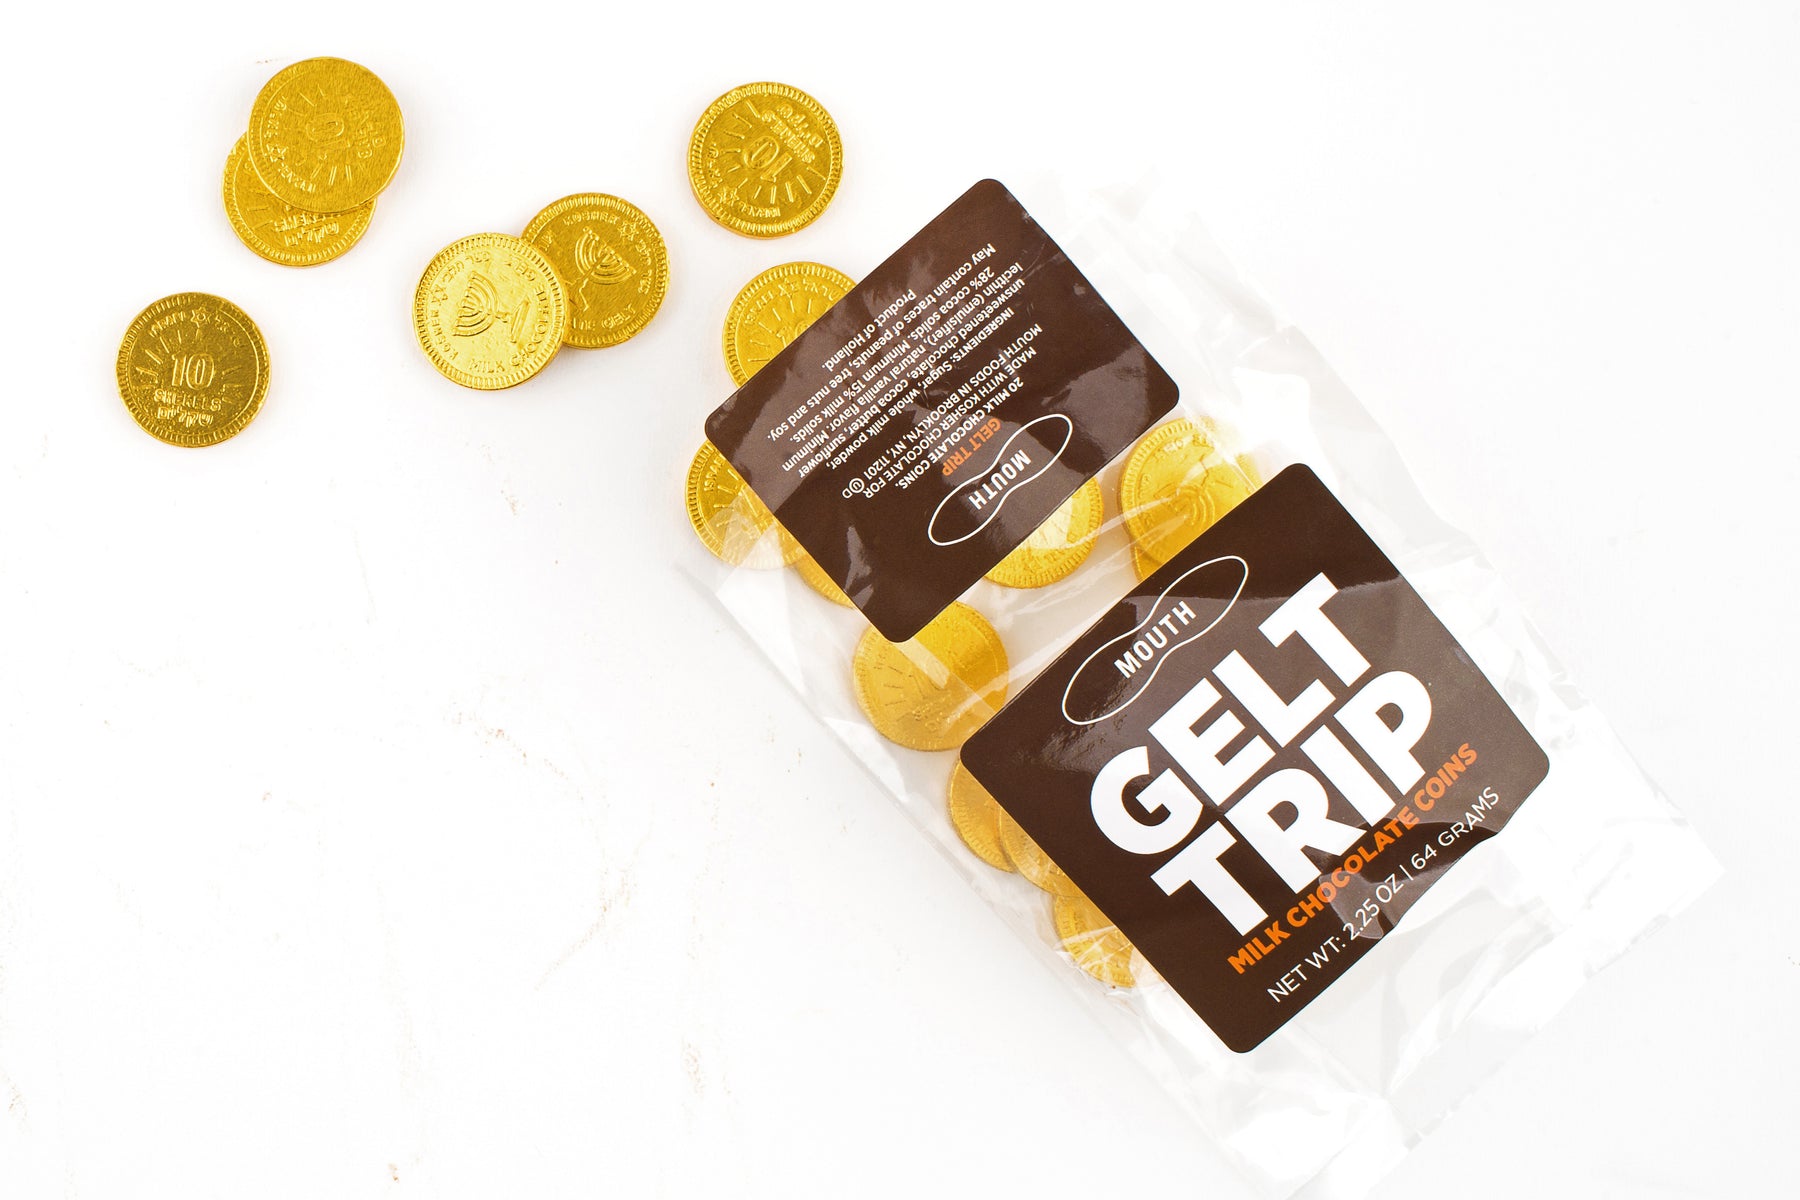 Gelt Trip milk chocolate coins: Best gifts under $15